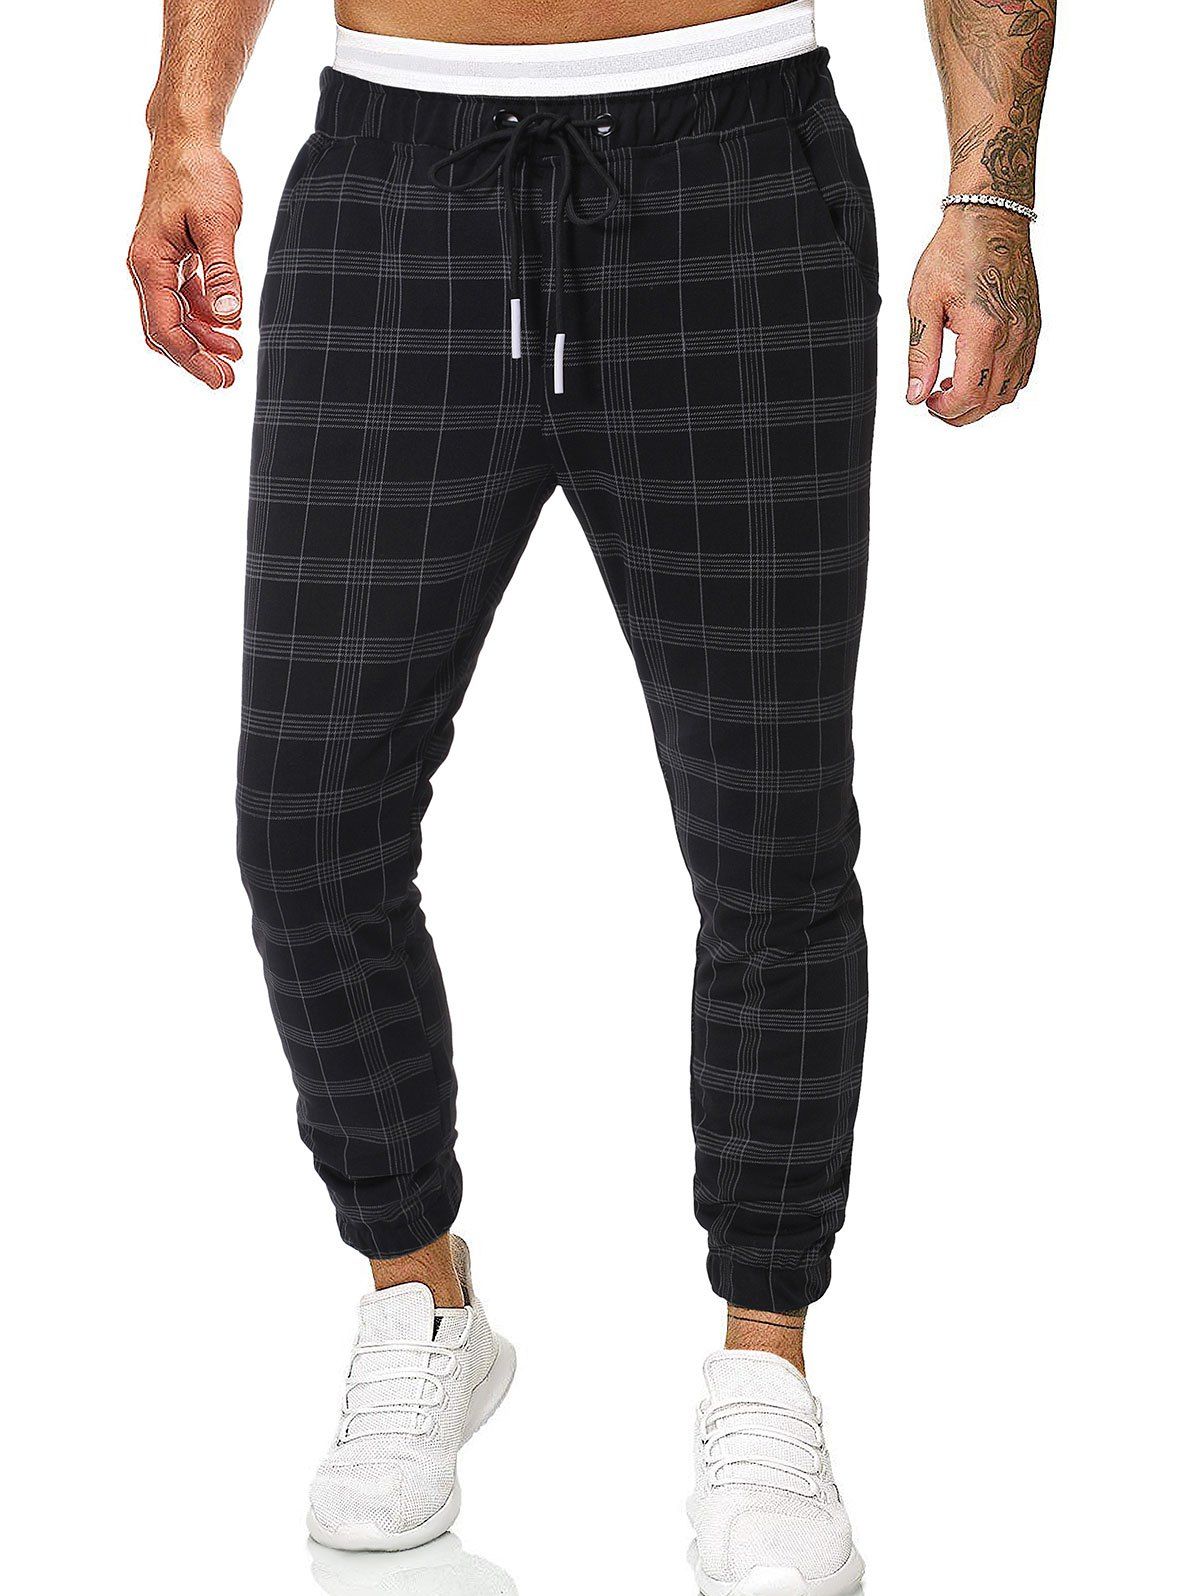 Long Checkered Print Casual Jogger Pants - BLACK M